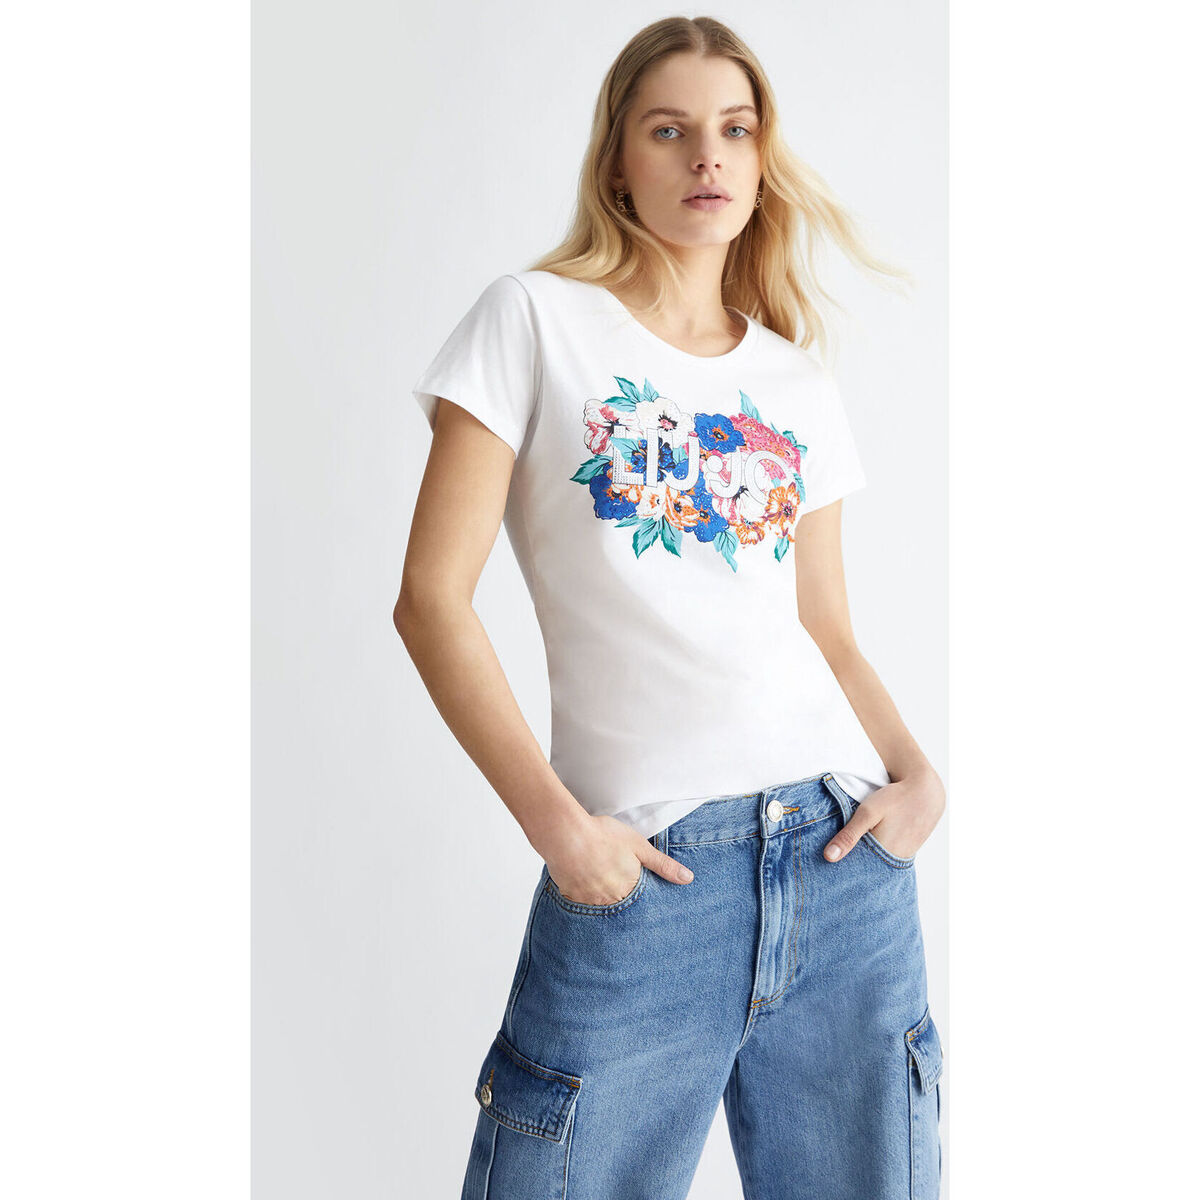 Liu Jo Multicolore T-shirt avec imprimé floral et logo itt99qgo